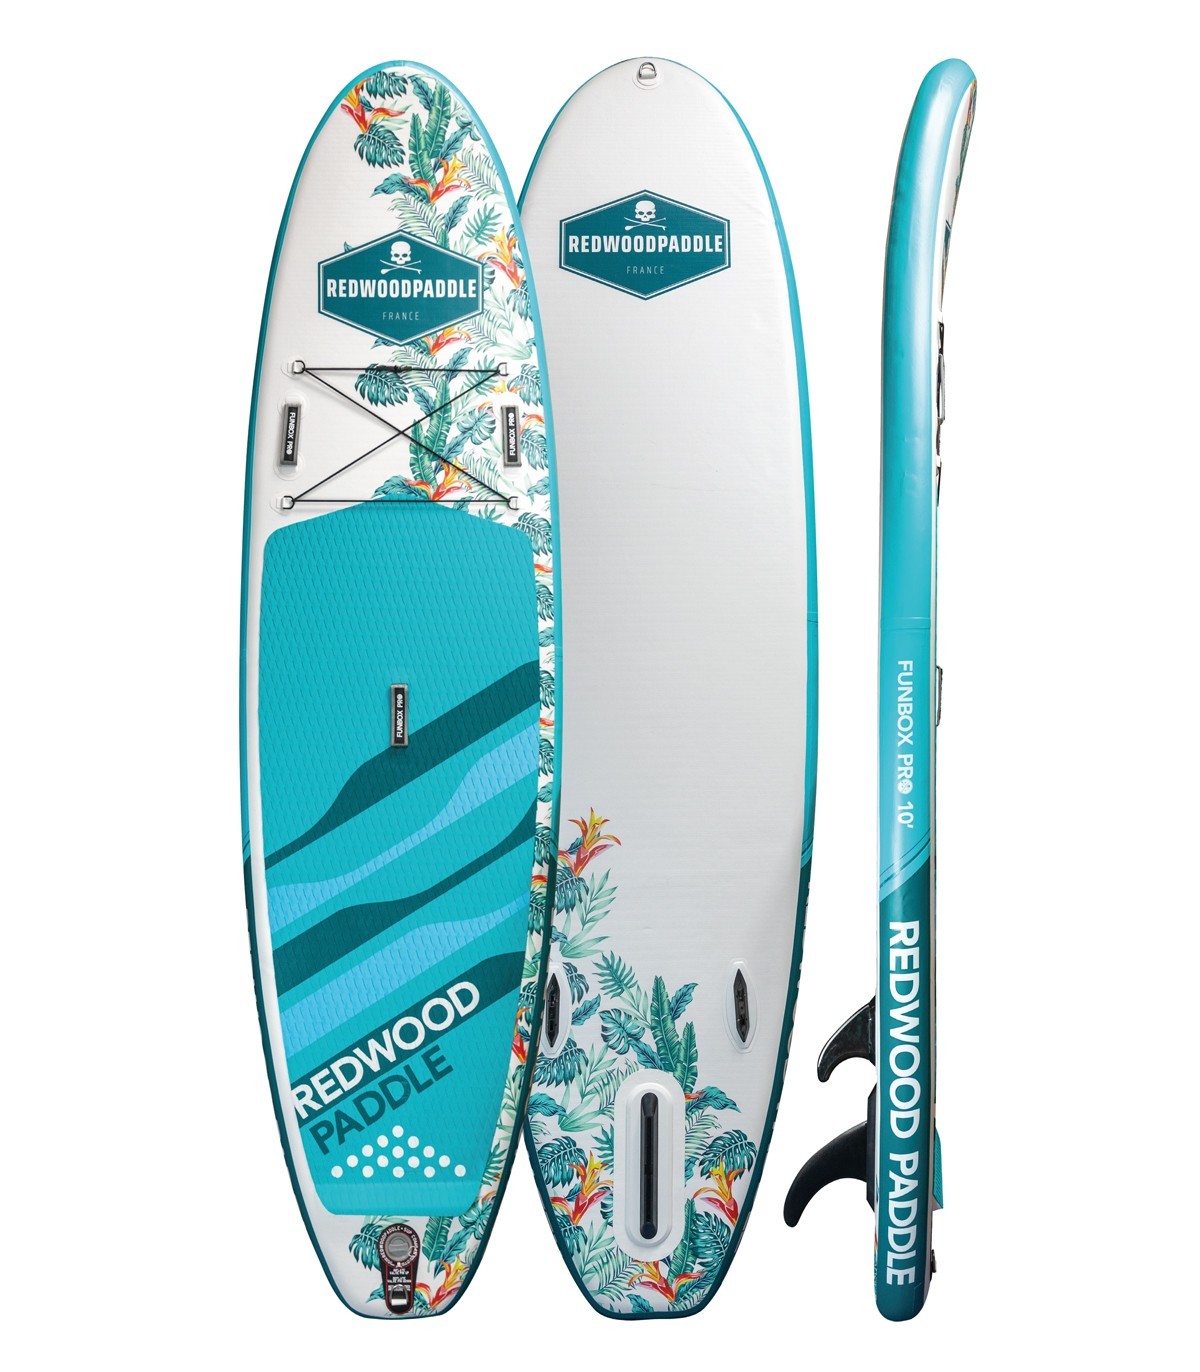 OCEAN venta de tablas de paddle Surf hinchables